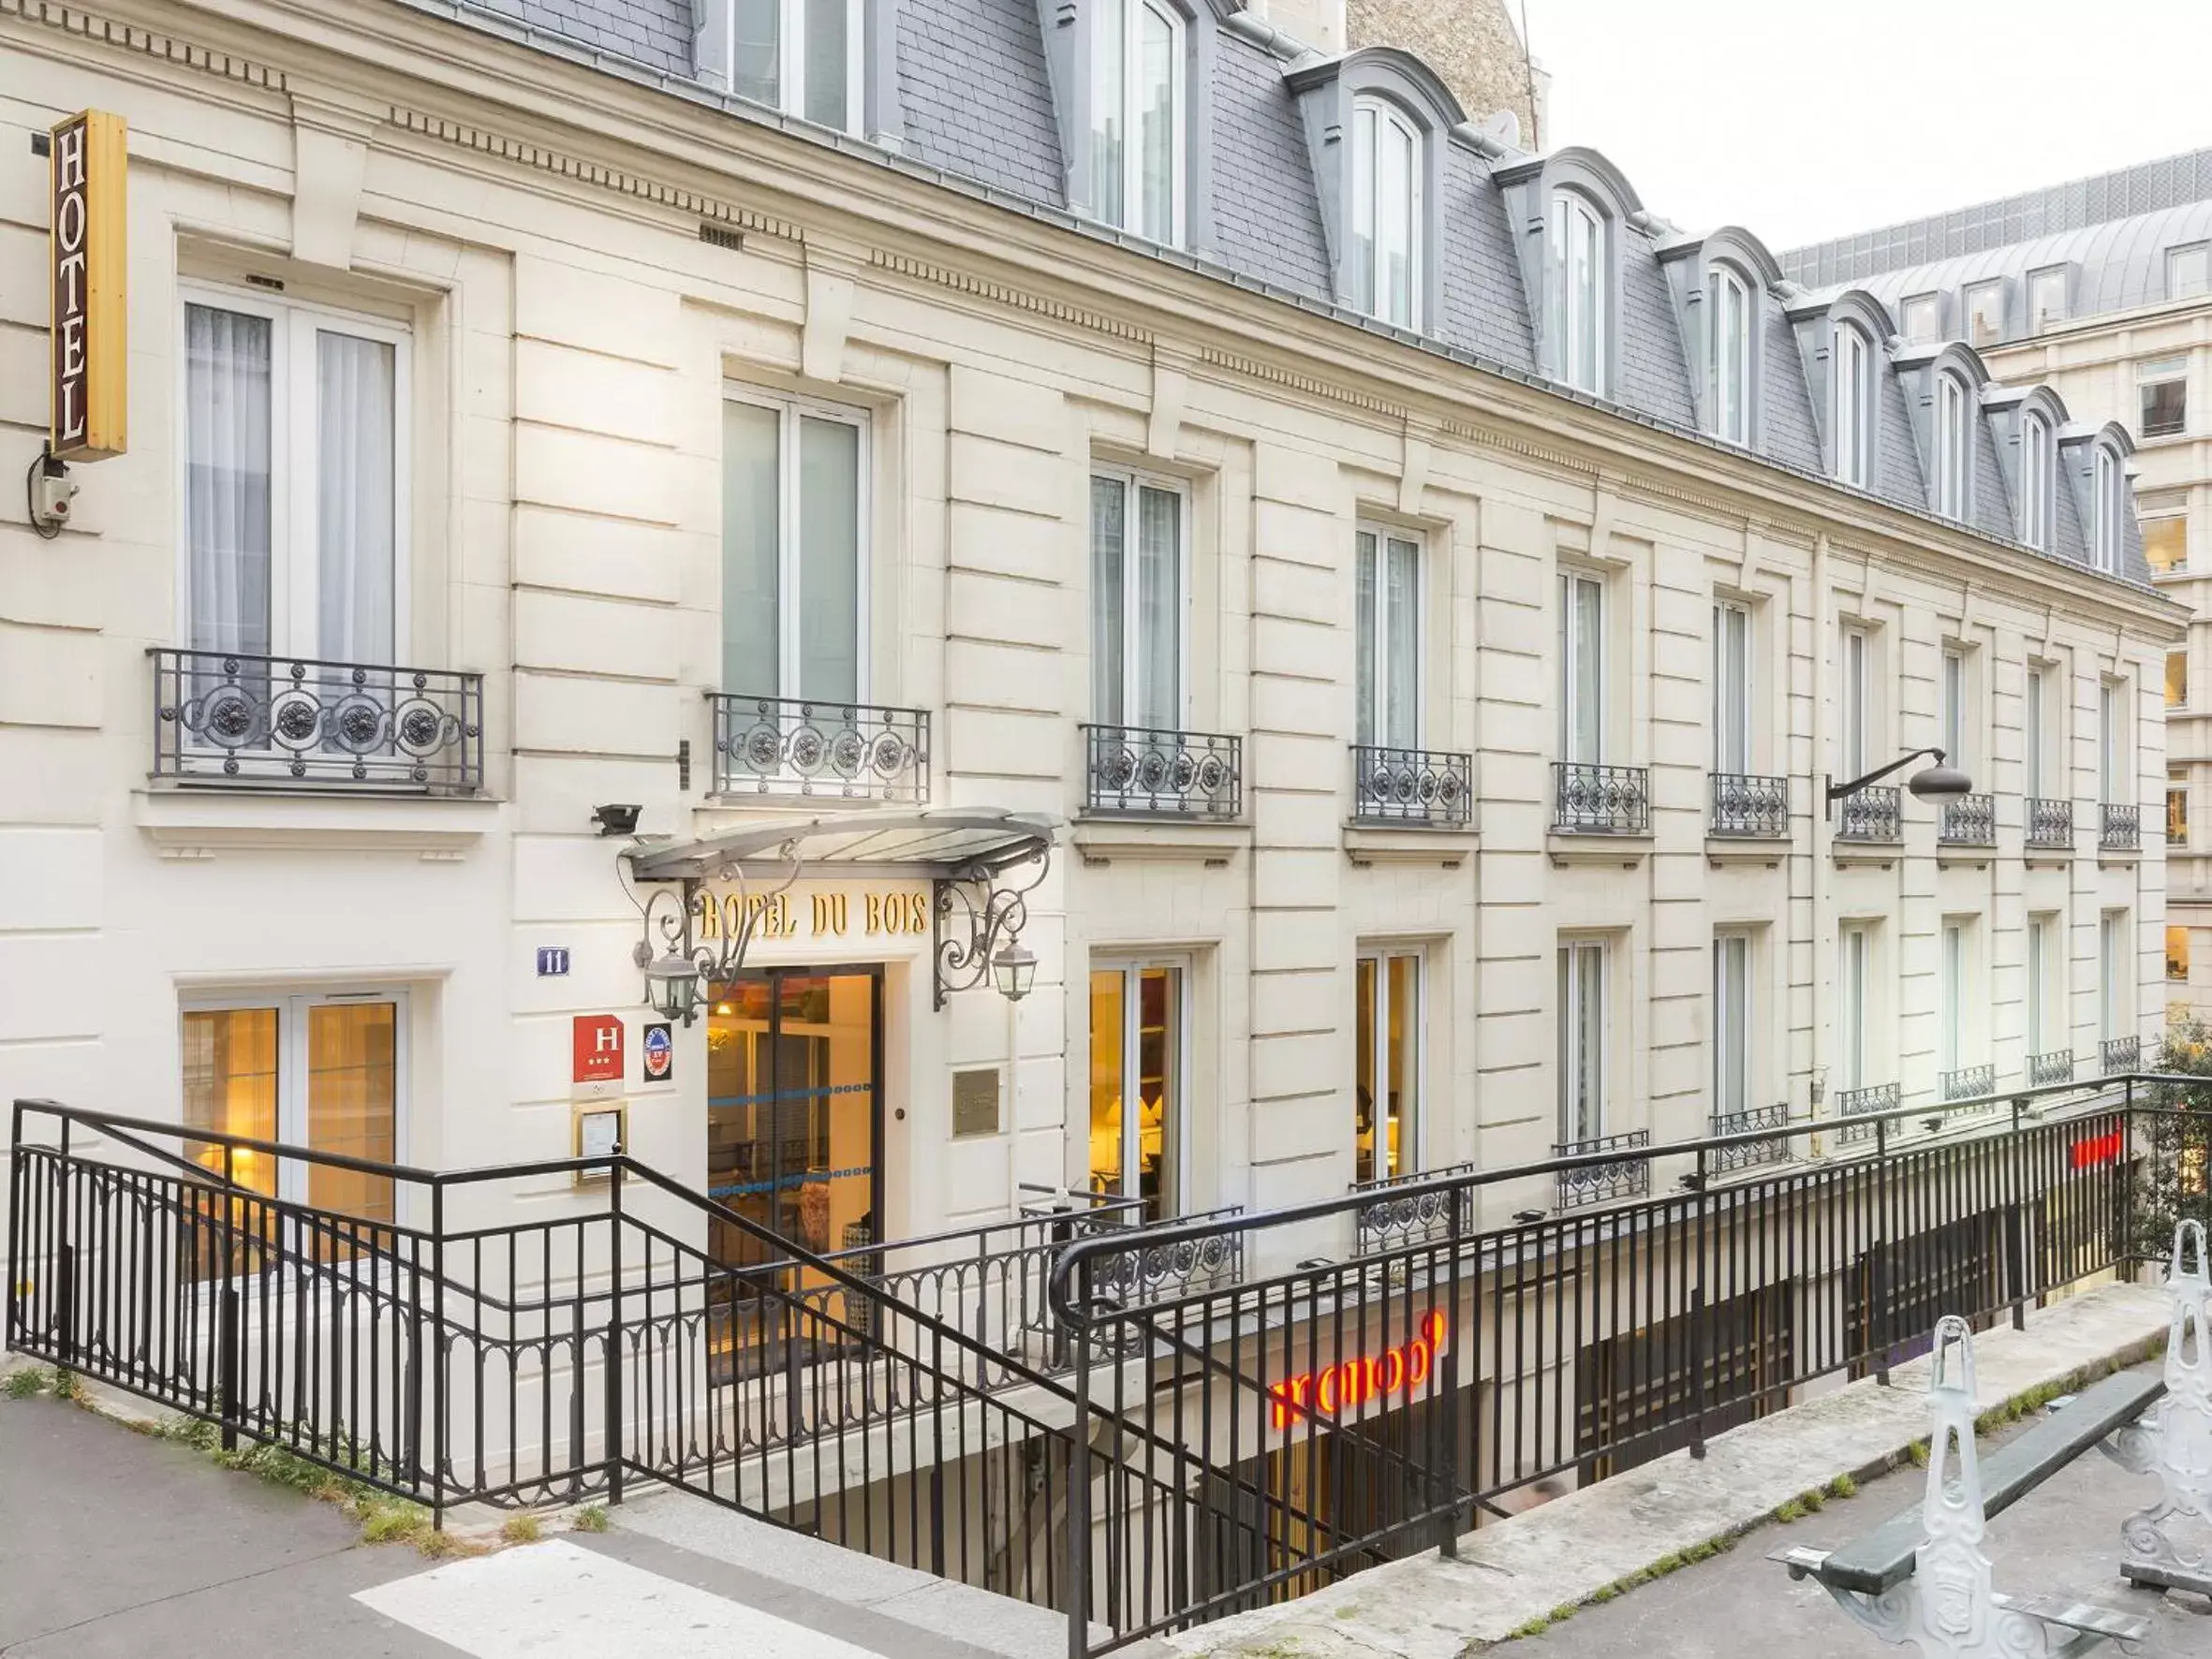 Facade/entrance, Property Building in Hôtel Du Bois Champs-Elysées